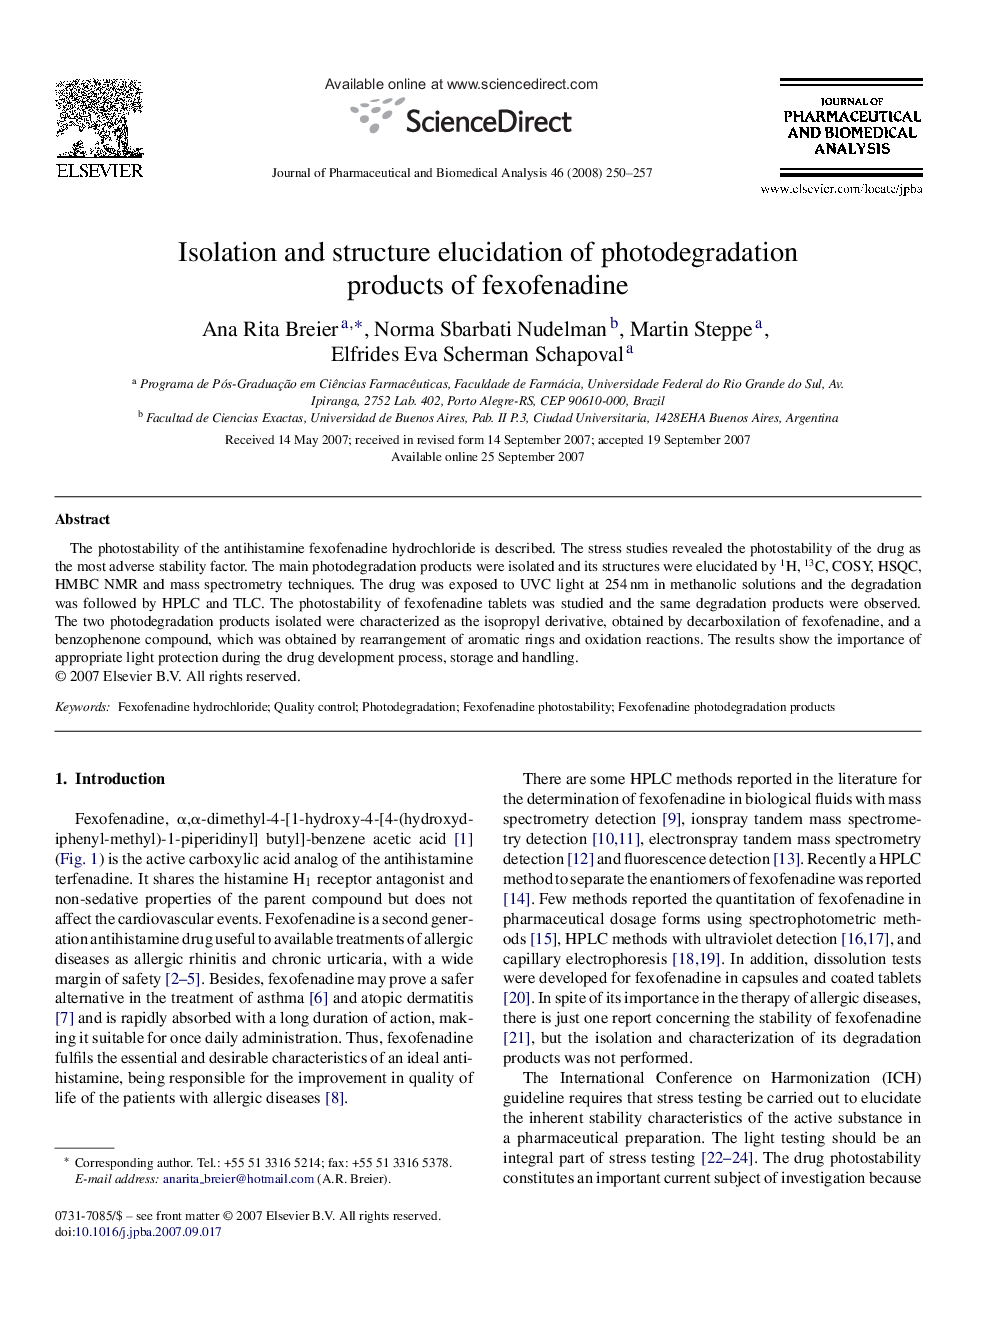 Isolation and structure elucidation of photodegradation products of fexofenadine